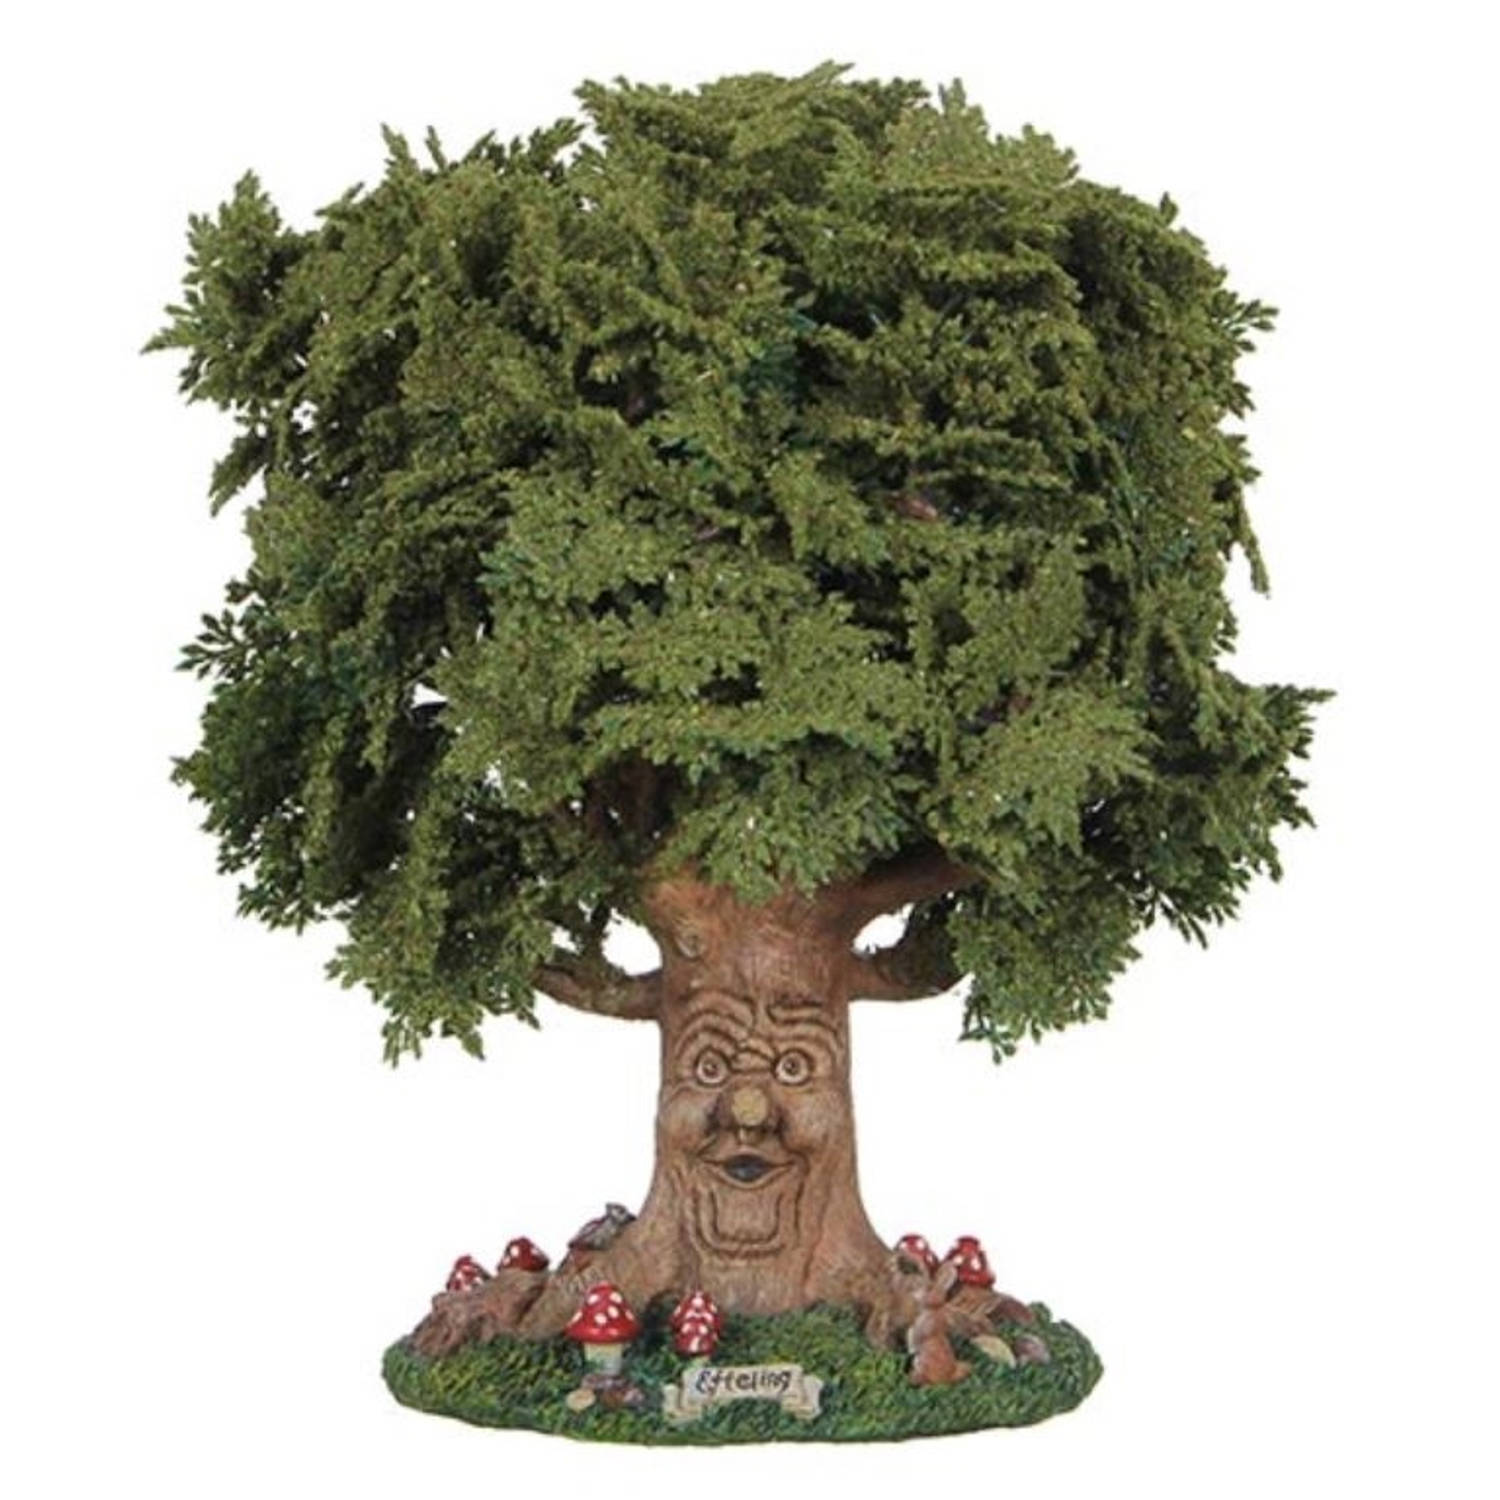 Efteling Miniatuur Sprookjesboom